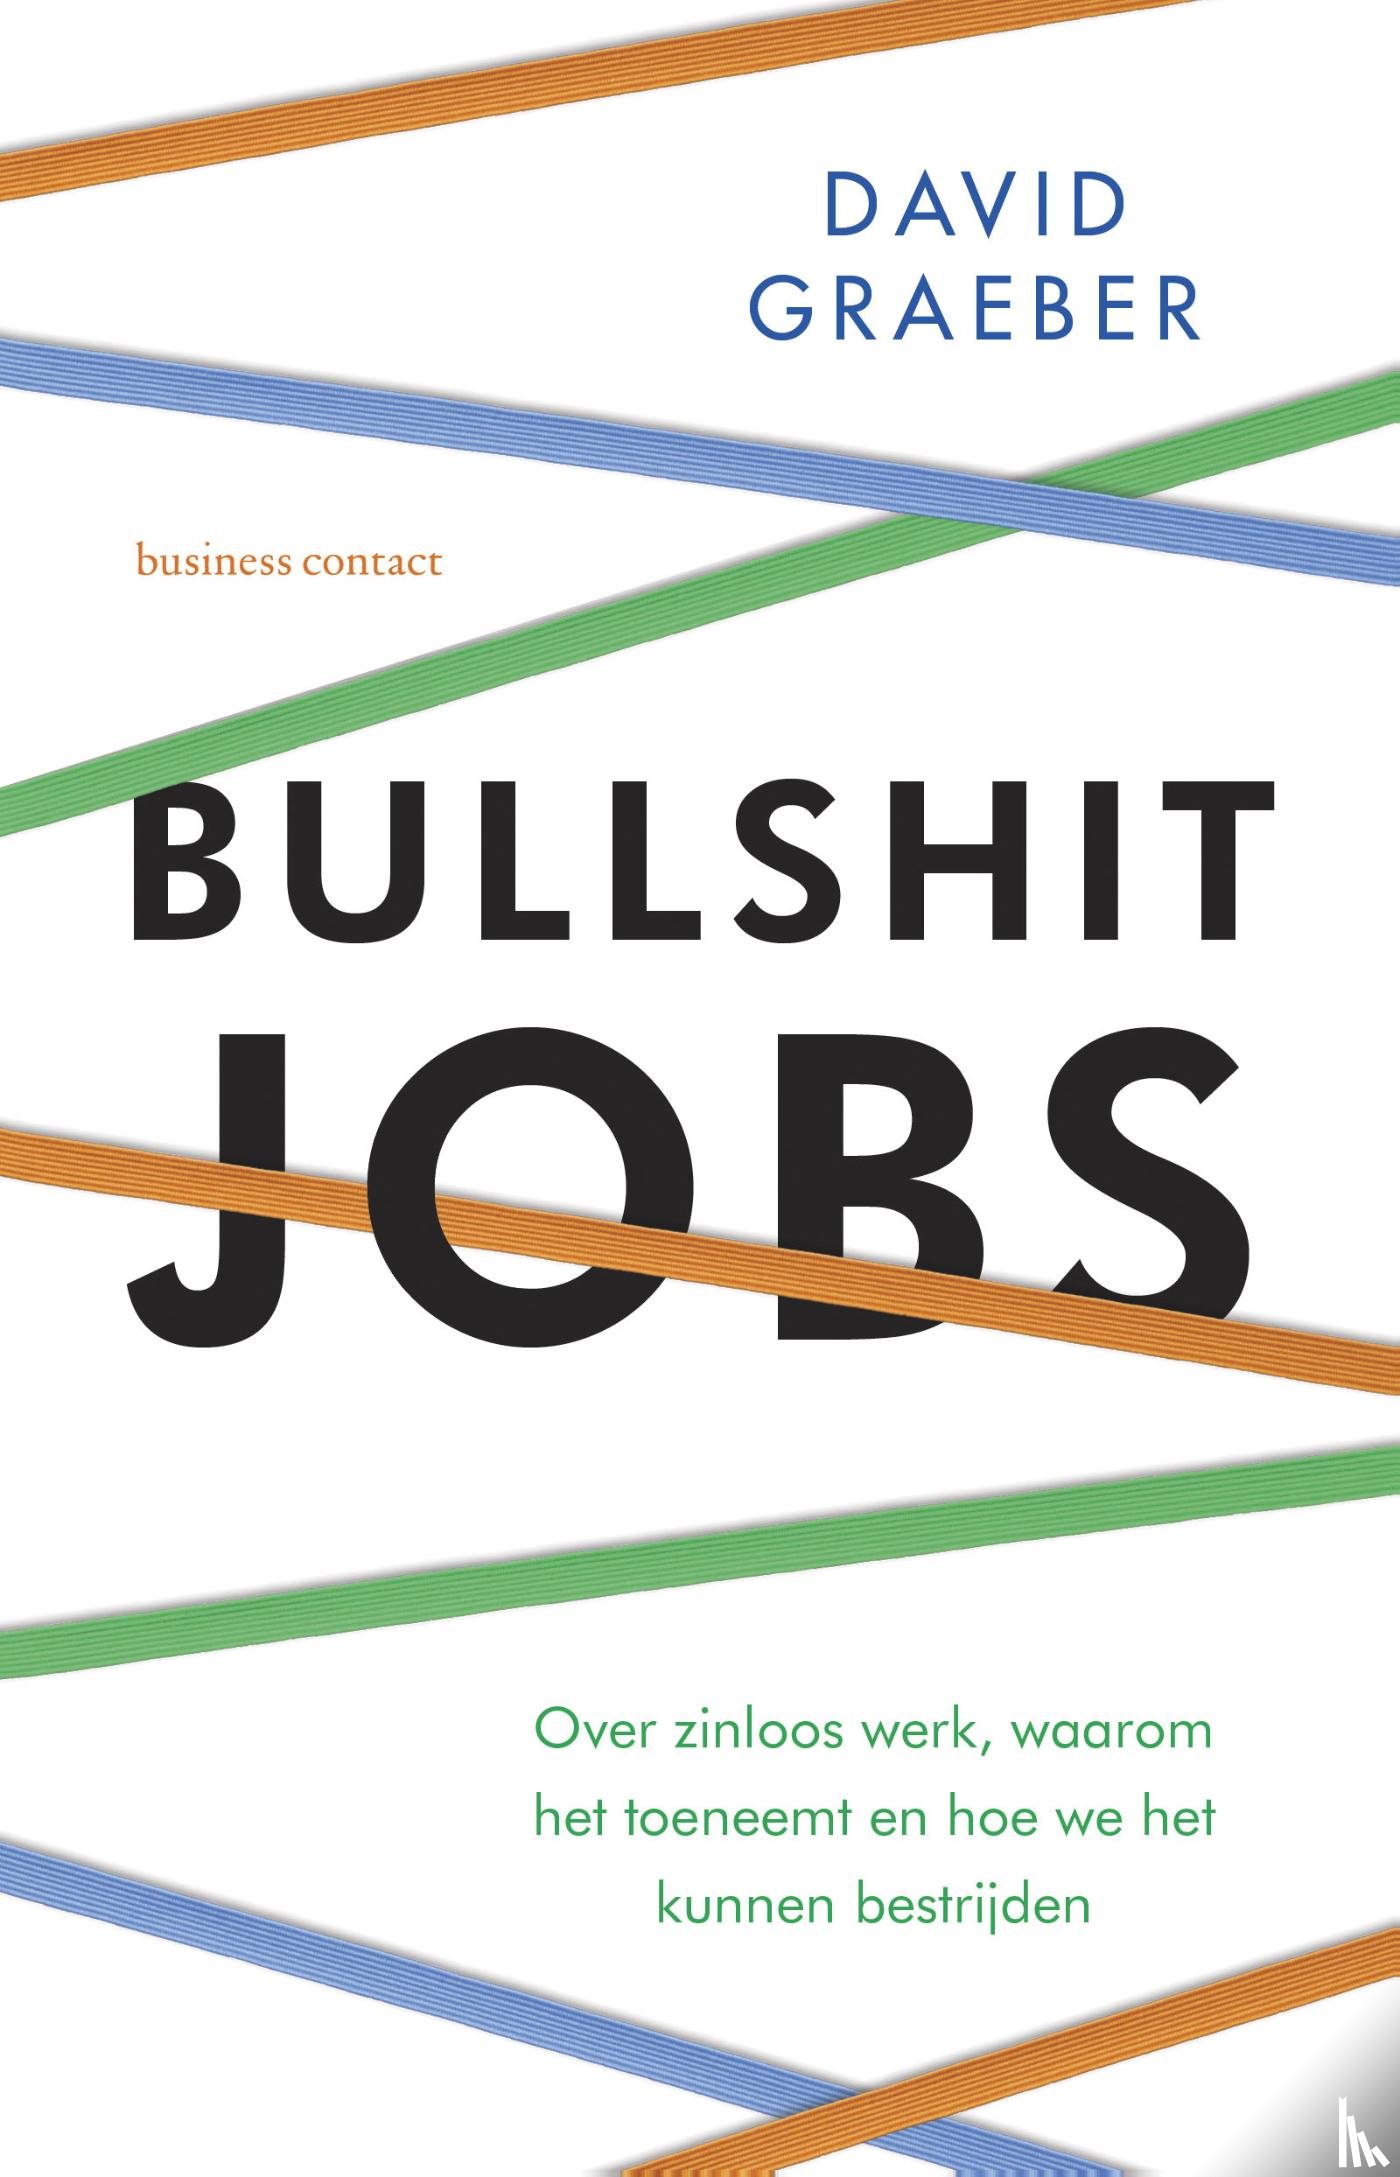 Graeber, David - Bullshit jobs